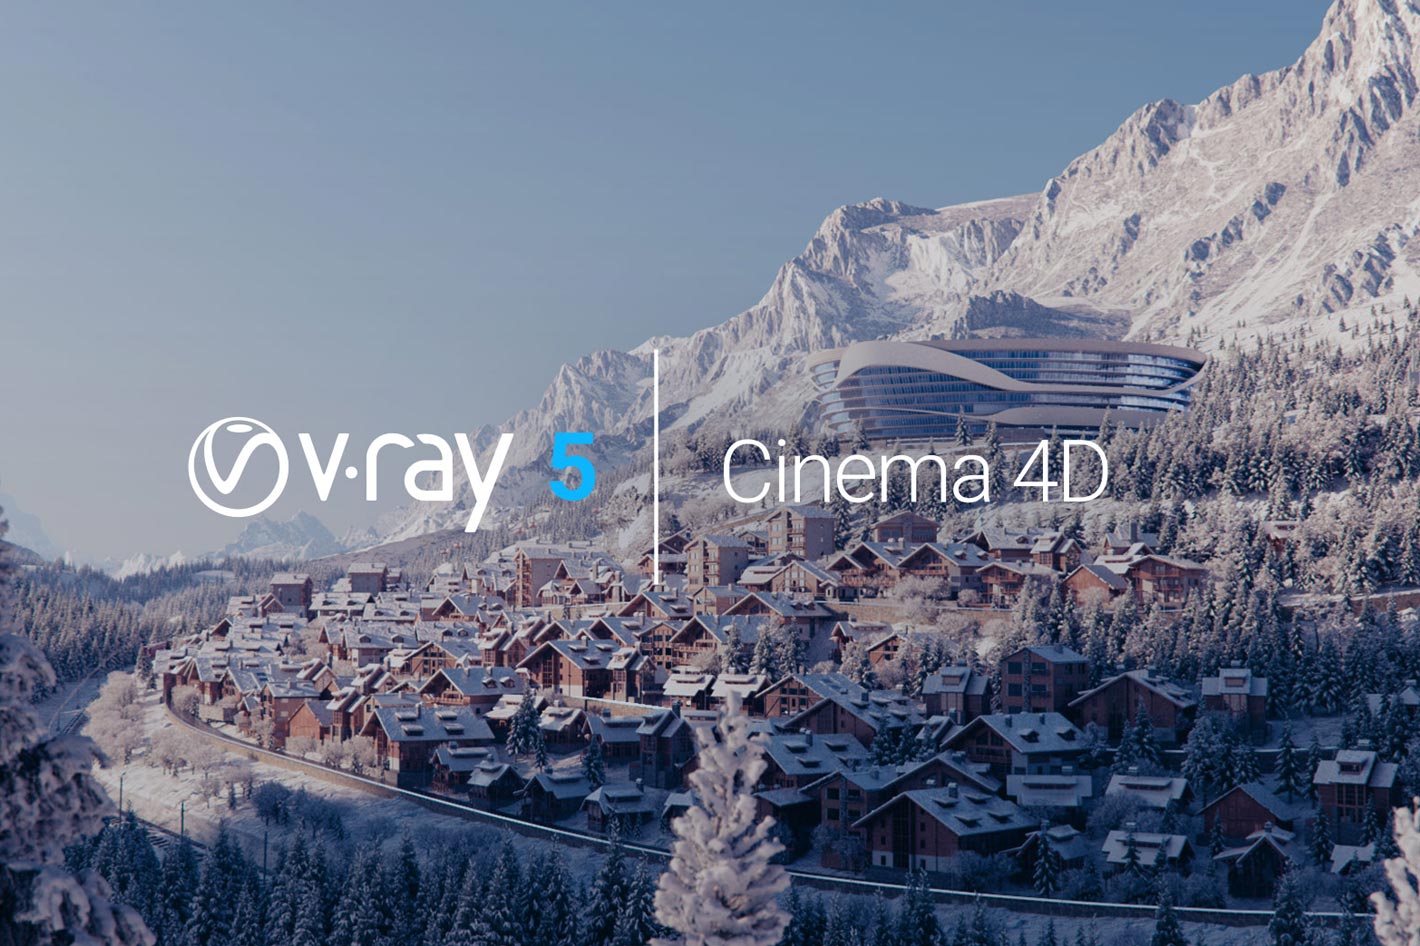 V-Ray 5 for Cinema 4D: upgrade brings full V-Ray experience